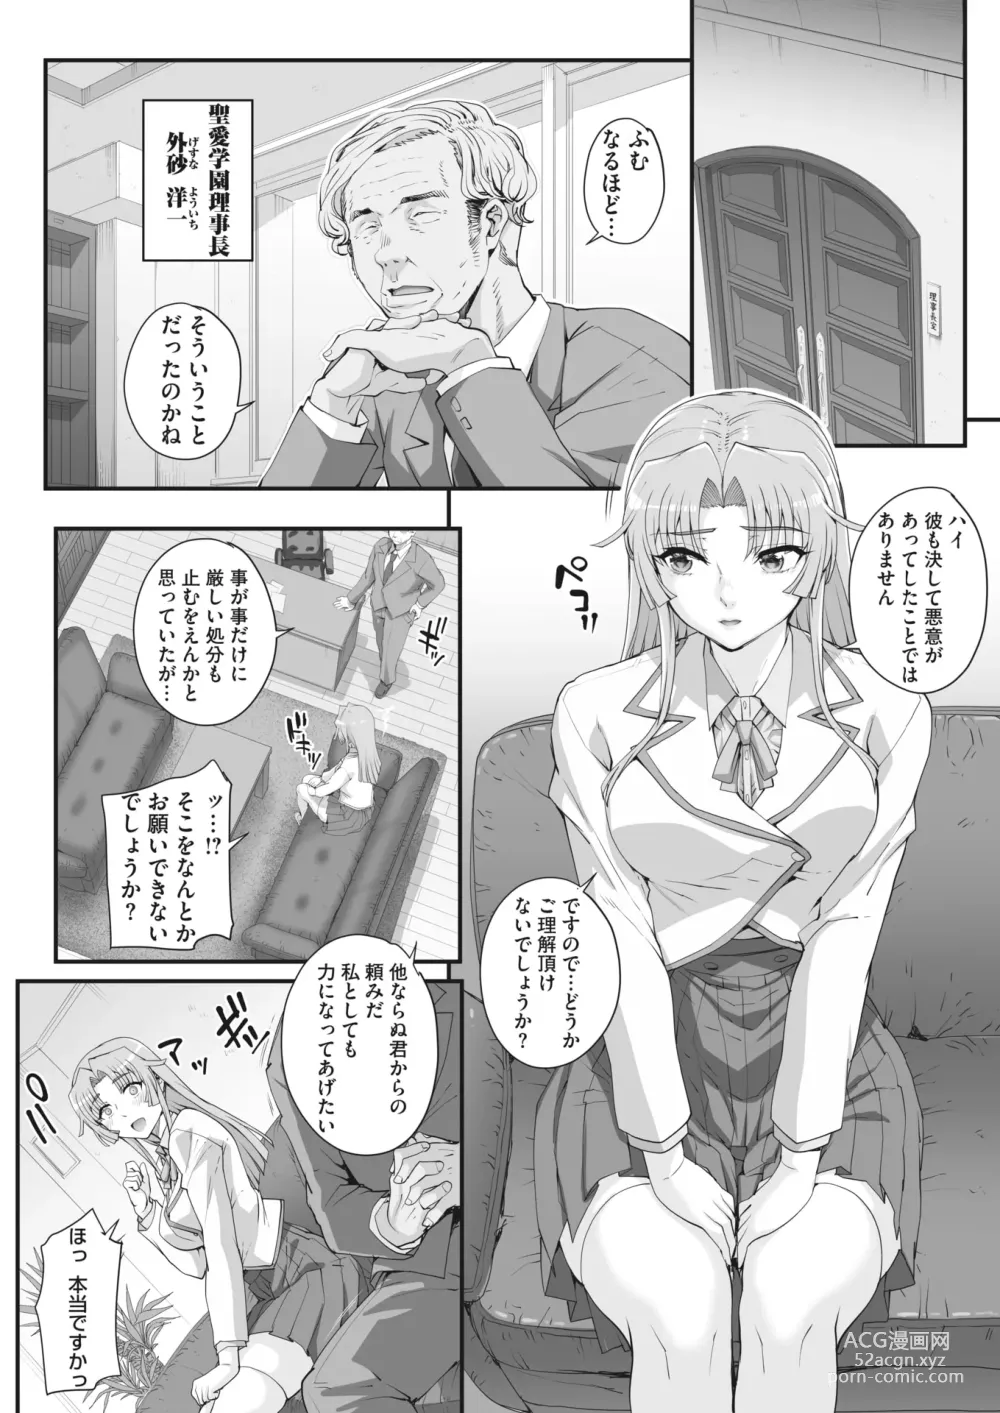 Page 4 of manga 性濁併セ呑ム Ch.1.4